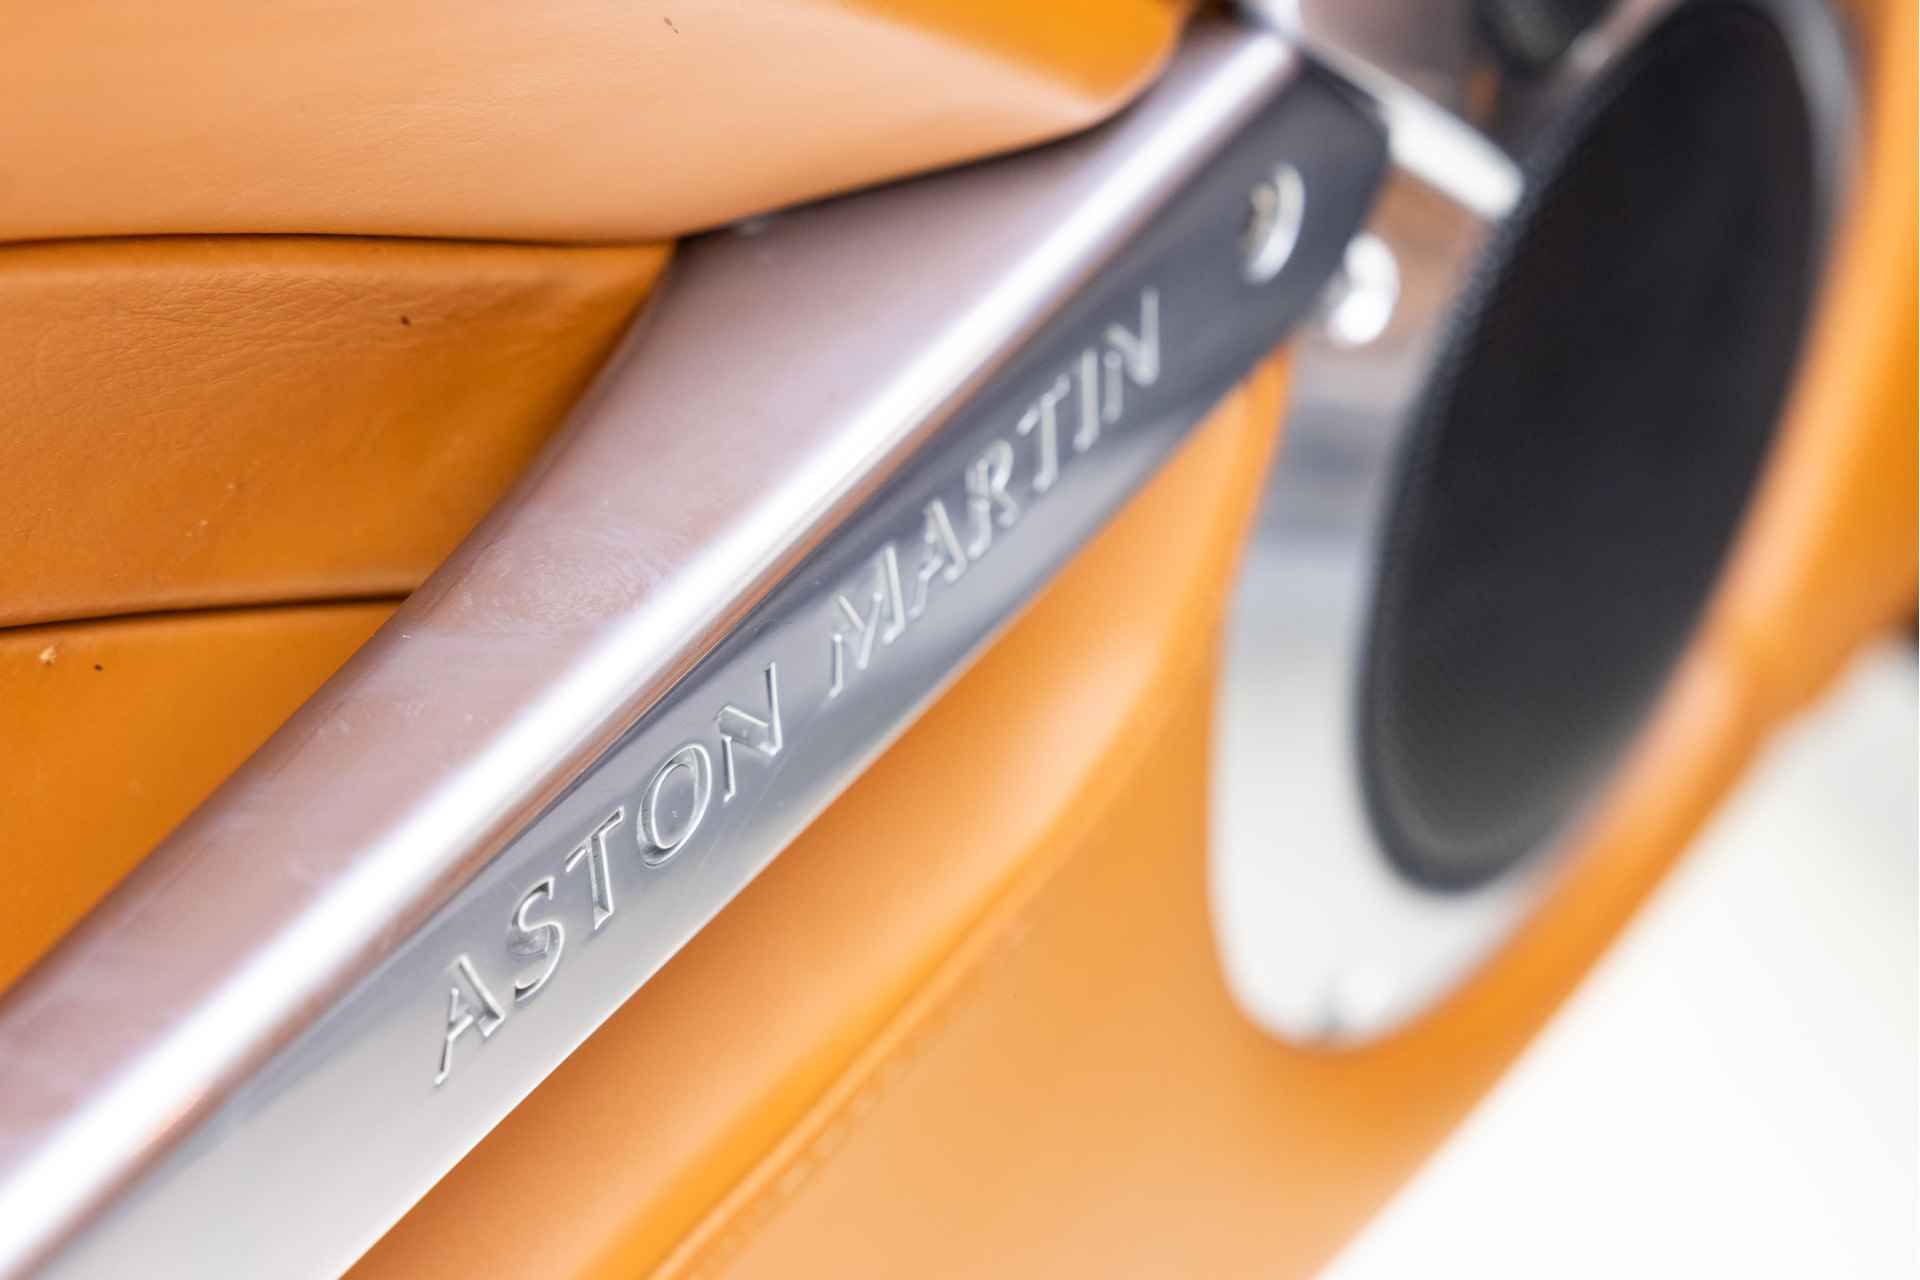 2006 Aston Martin Vanquish S - 12/45